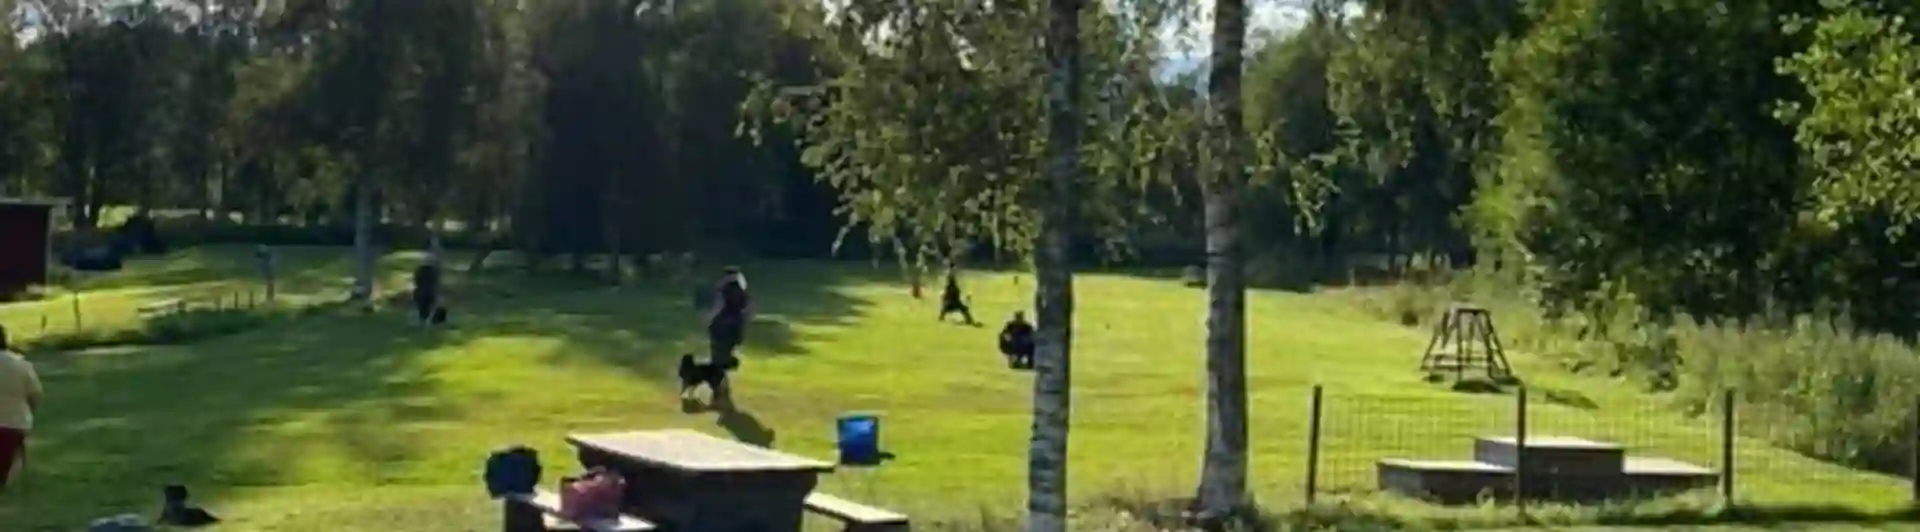 En solig sommardag med flera ekipage på träningsplanen. En förare ligger i skuggan tillsammans med sin hund i gräset och kollar på dem andra. 